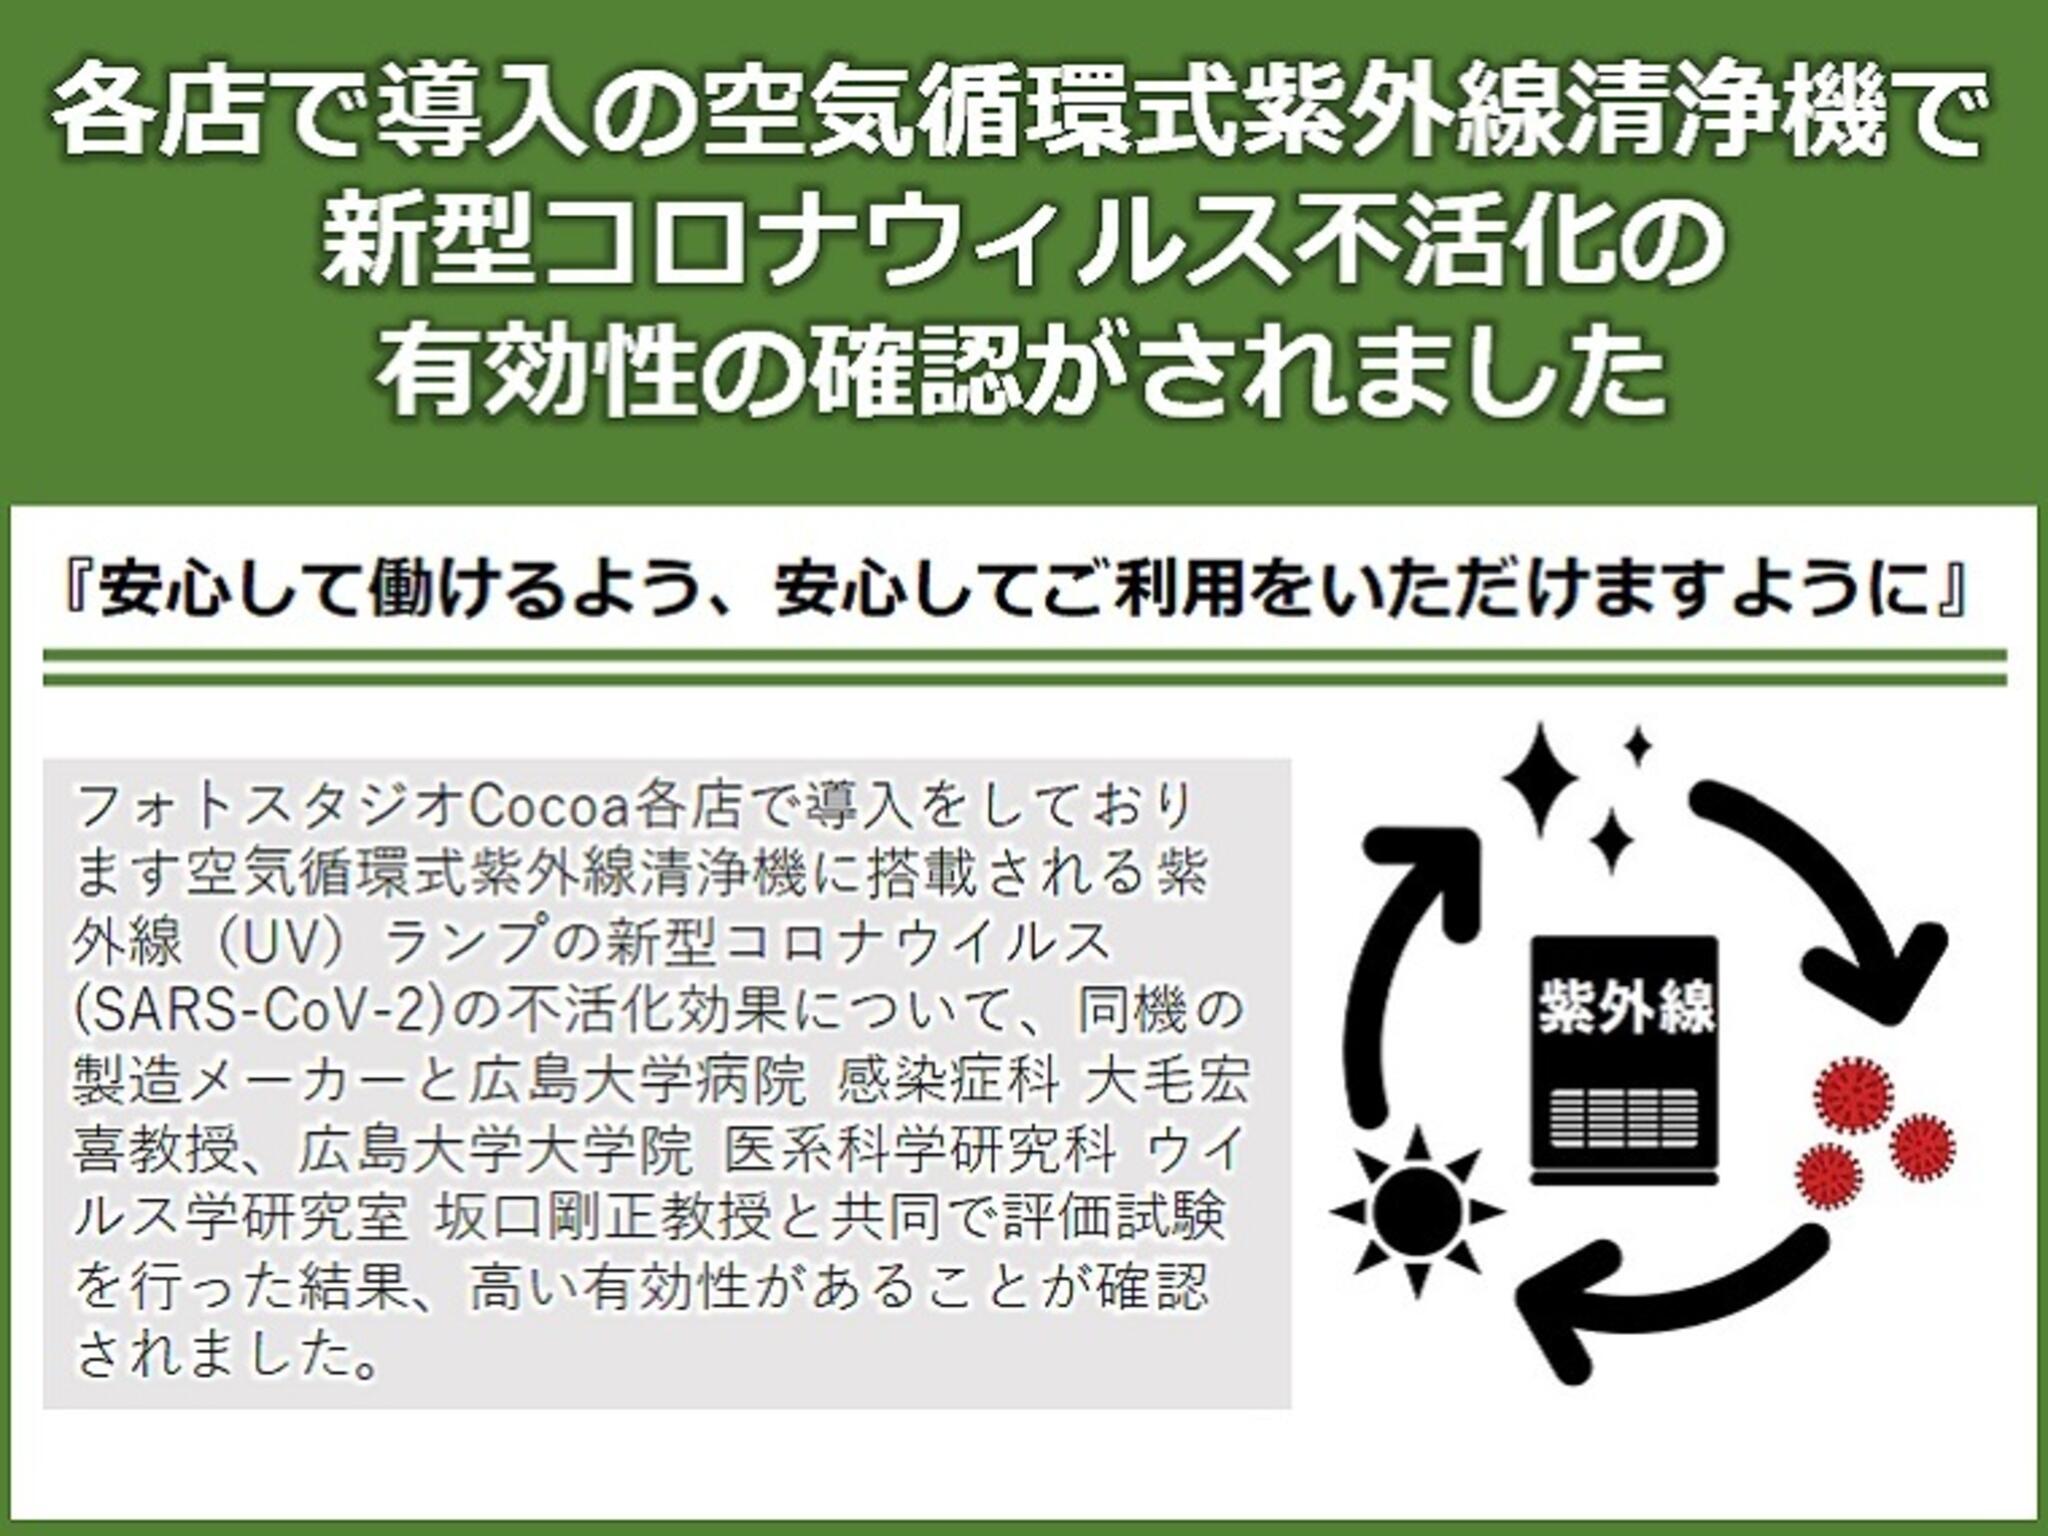 フォトスタジオCocoa横浜港北店からのお知らせ(当社採用導入の機器で新型コロナウイルスの不活化効果が確認されました。)に関する写真